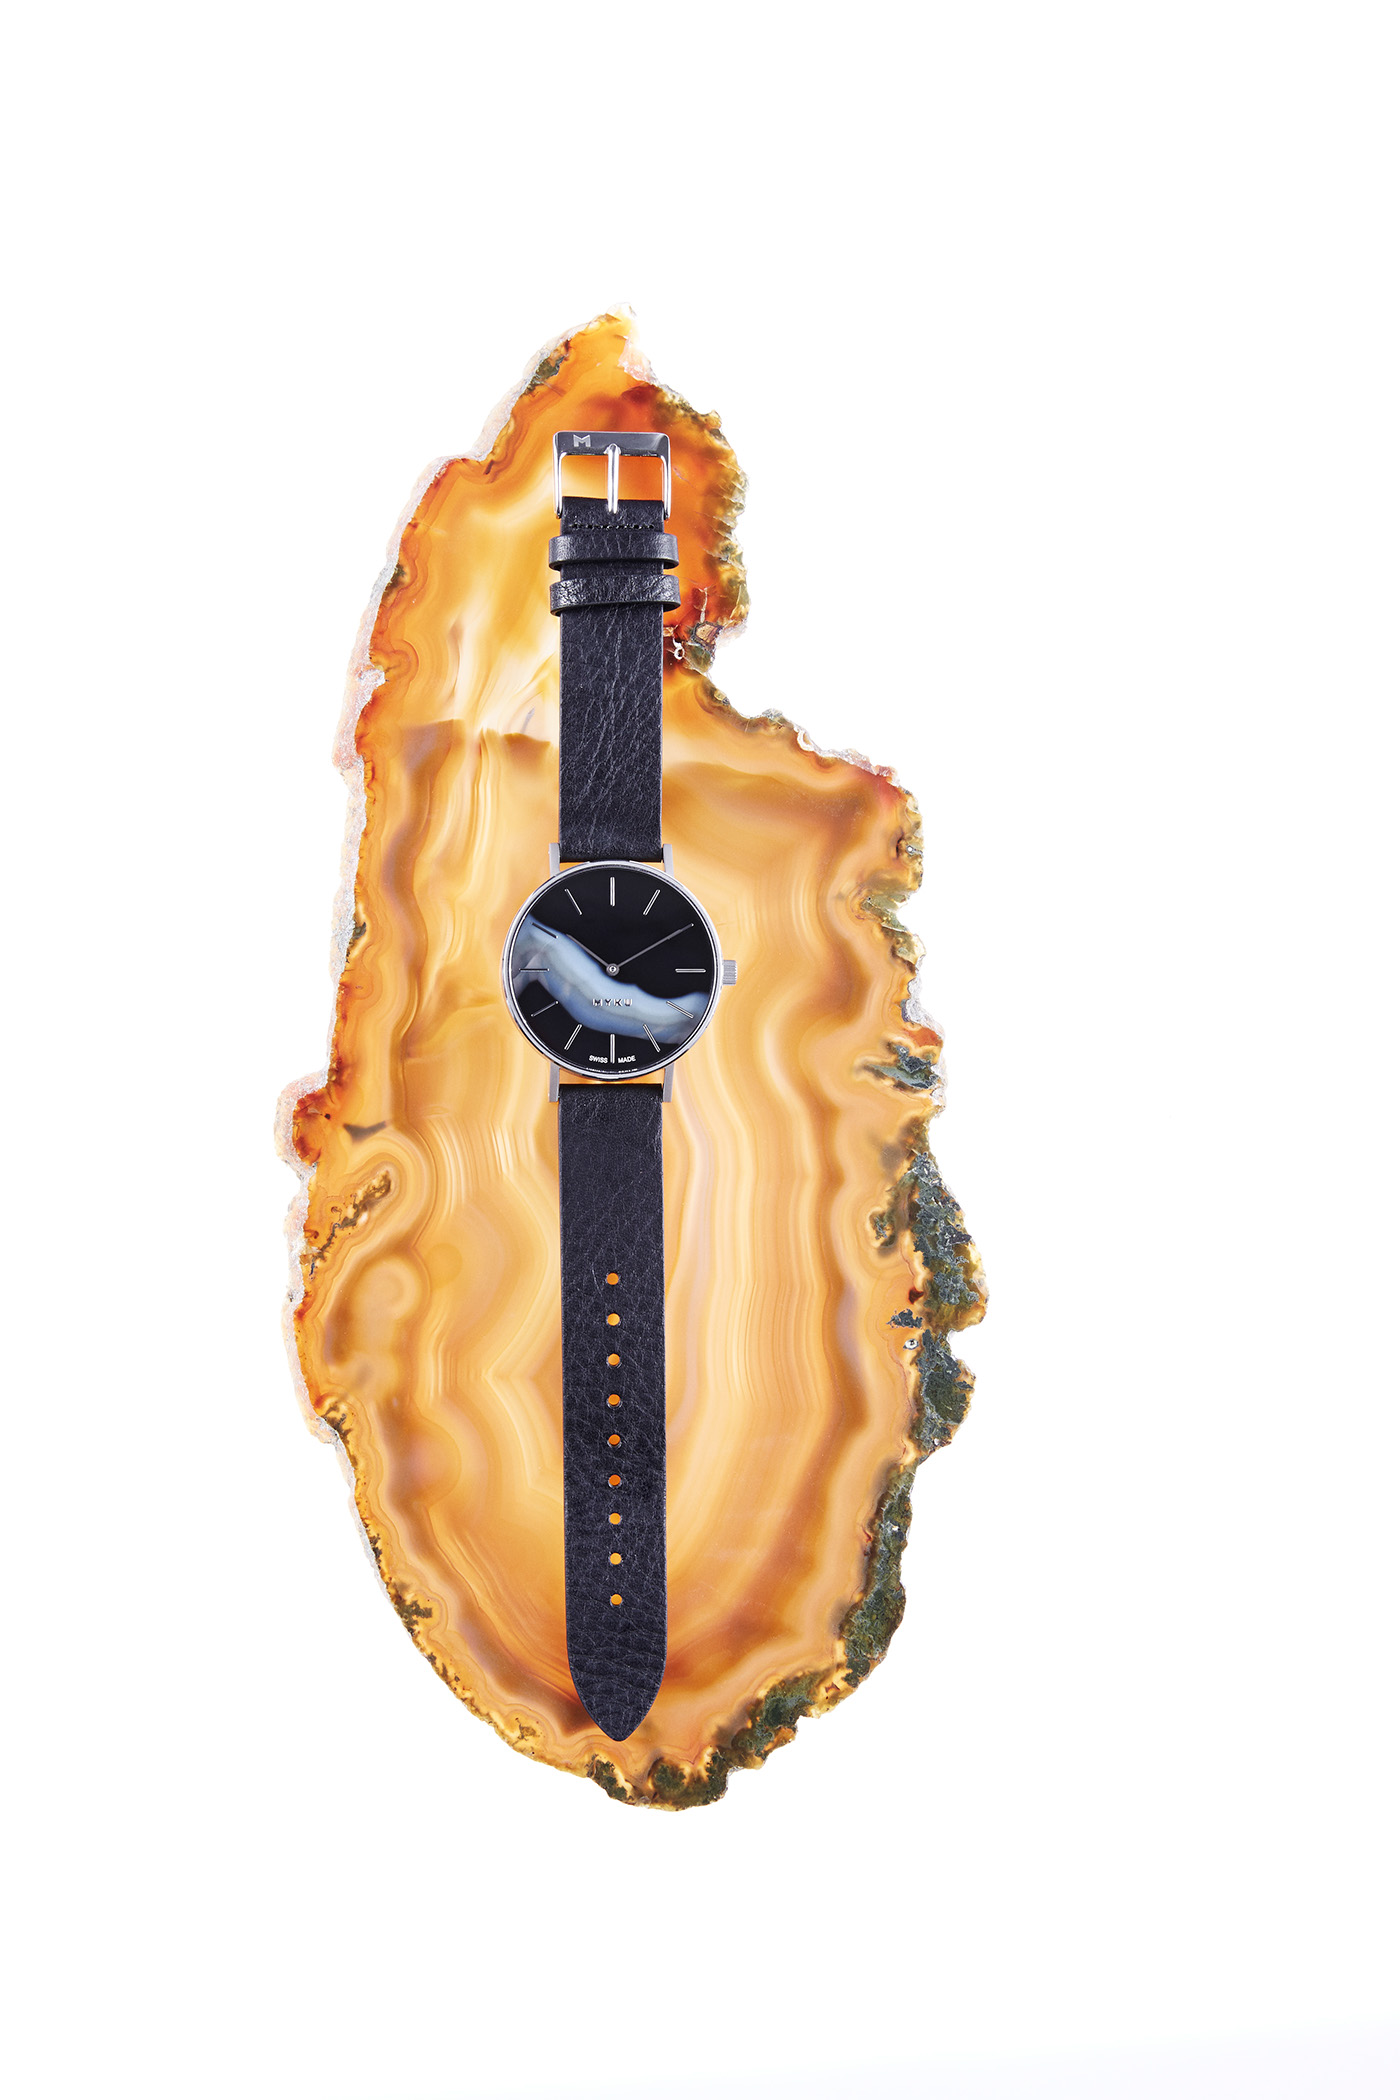 Marble watch timepiece MYKU elemental swiss made black onyx